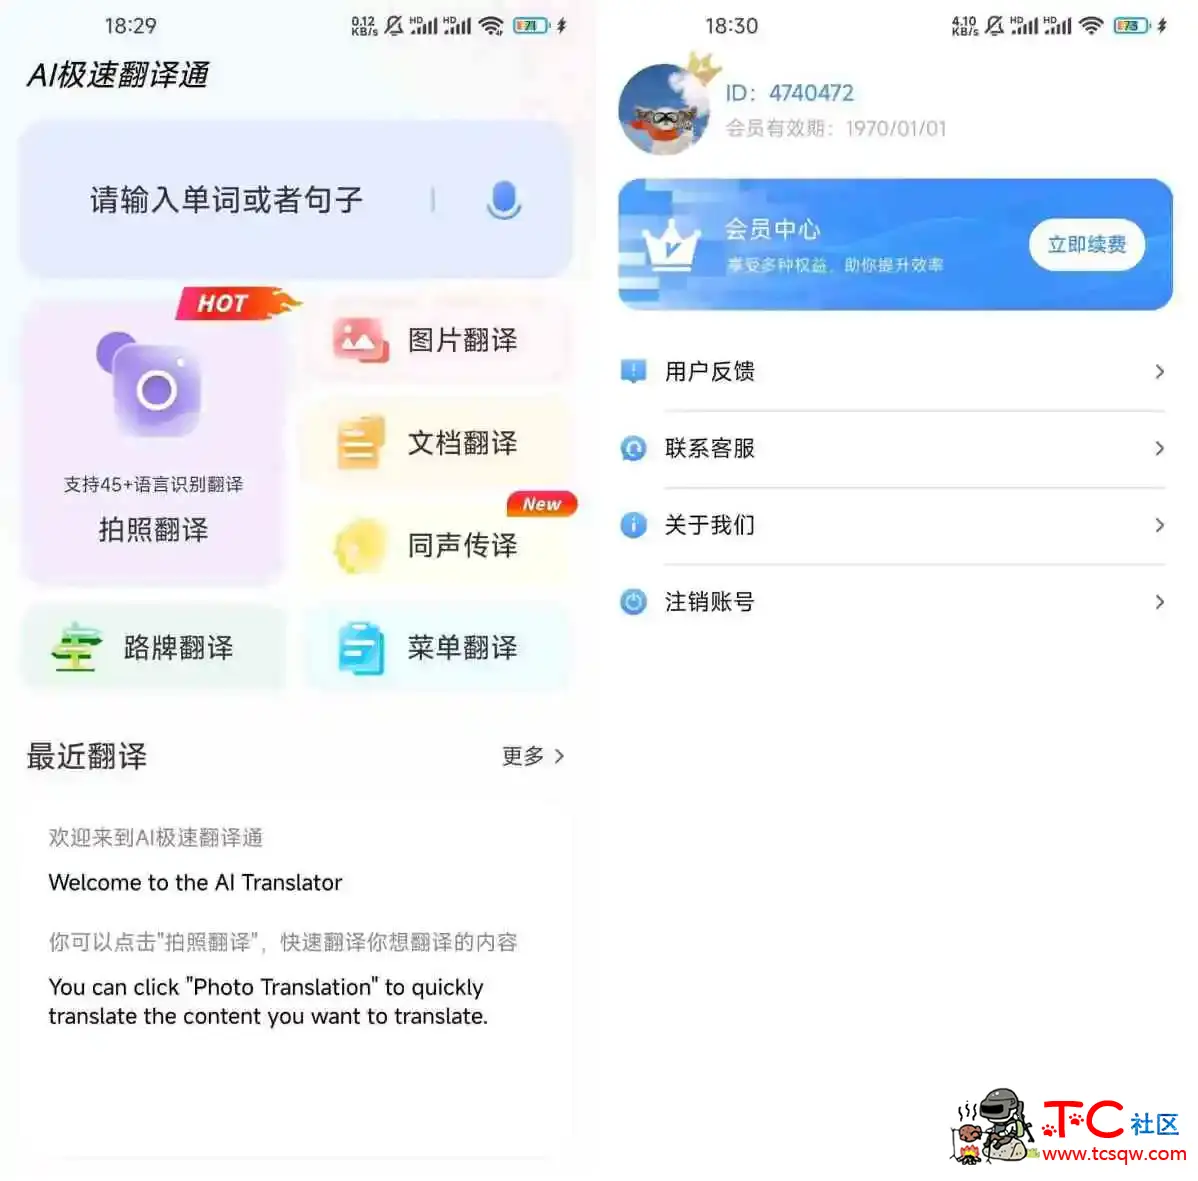 AI极速翻译通v1.0.11会员版这款翻译App必须收藏 TC辅助网www.tcsq1.com58